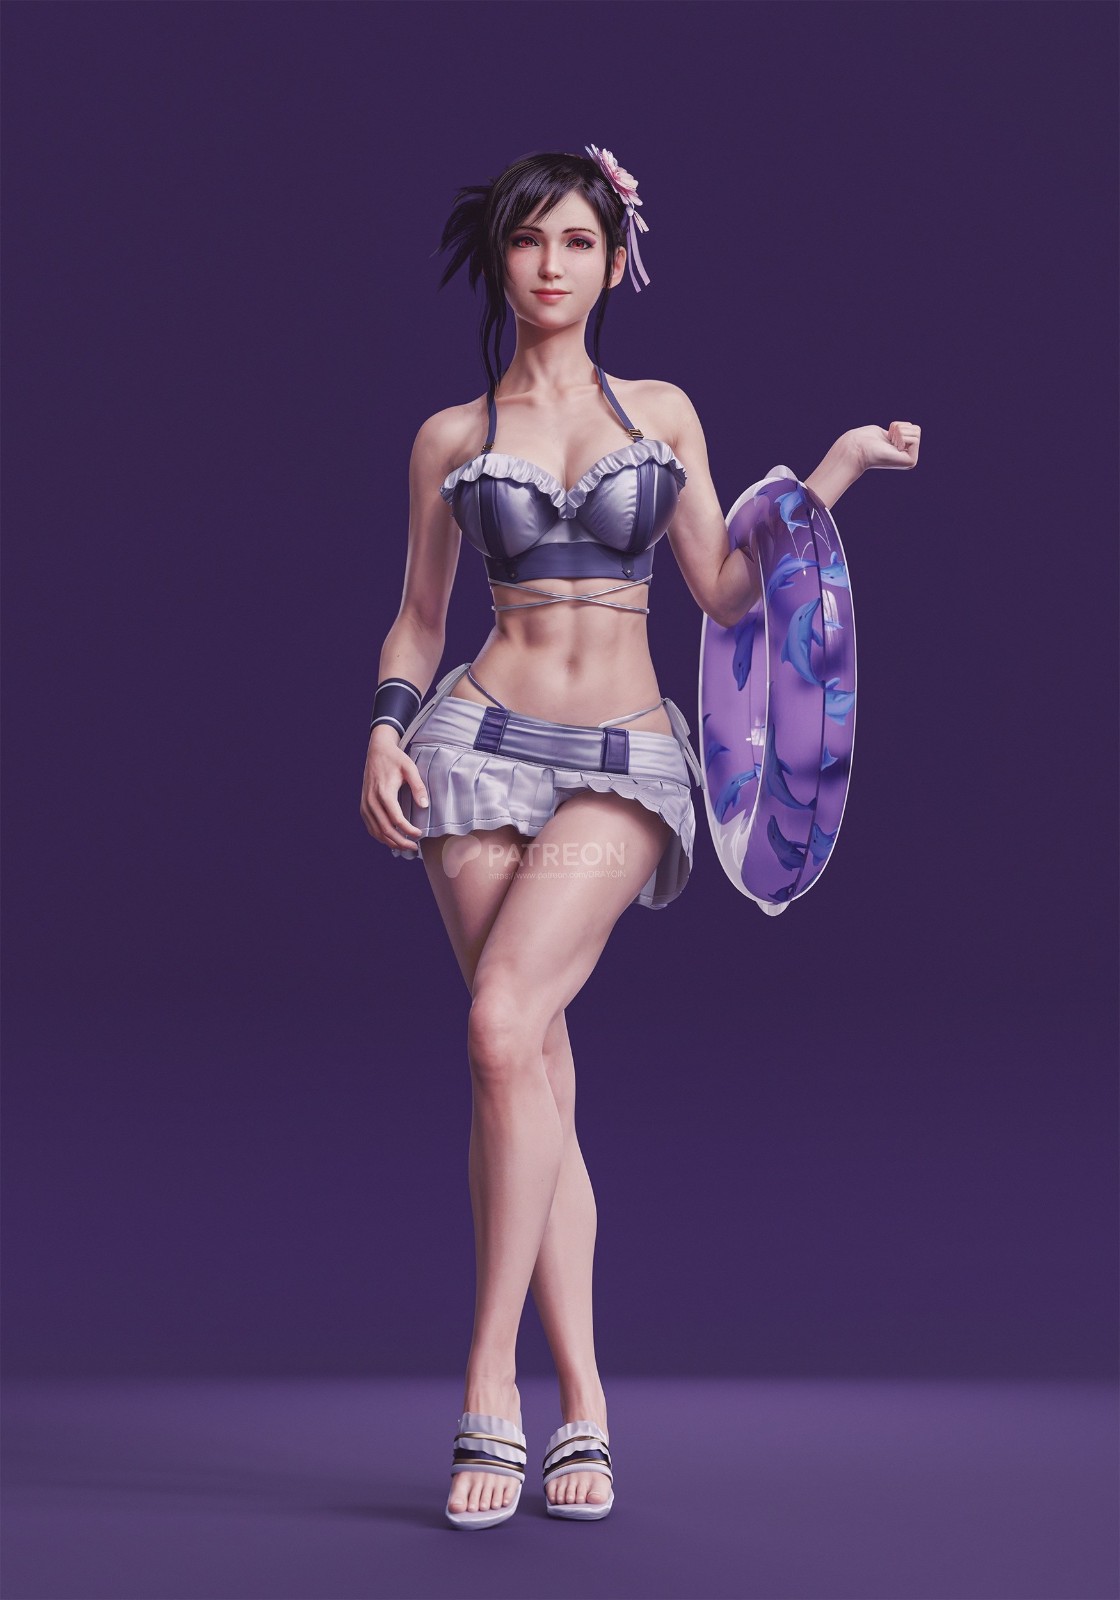 期待已久的《最終幻想7》:重生發售後穿上新泳裝